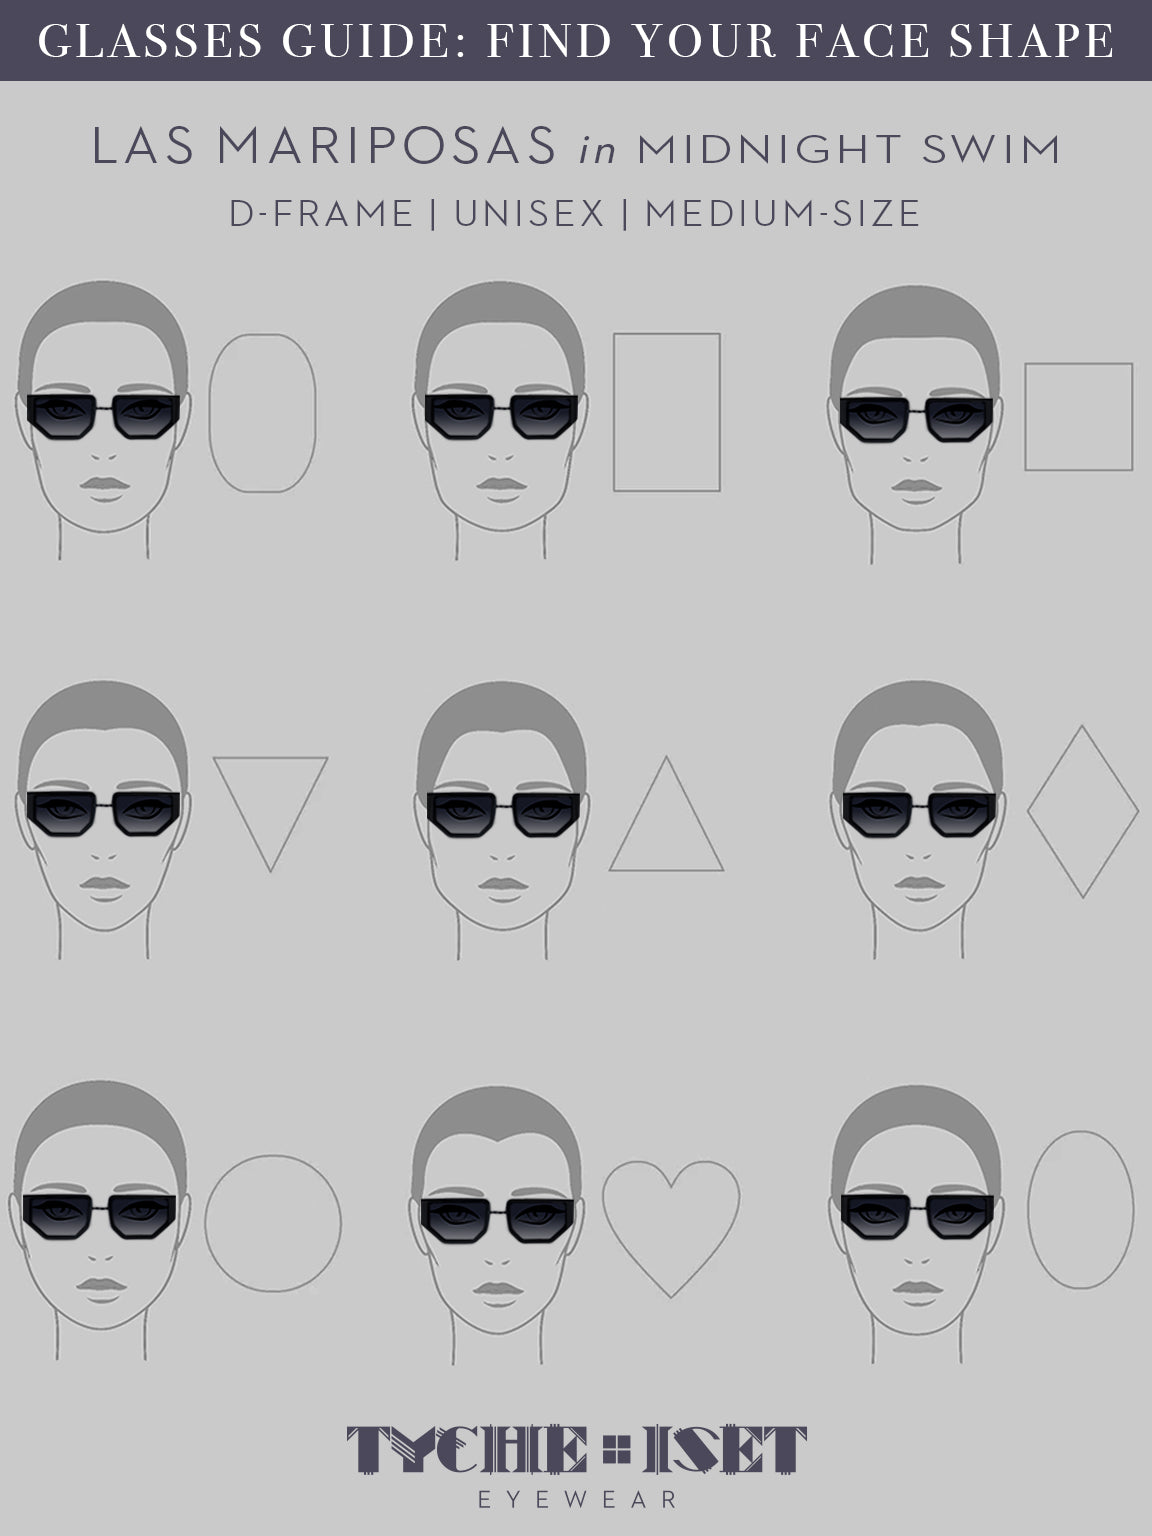 Louis Vuitton Mix It Up Square Sunglasses Black Acetate. Size U